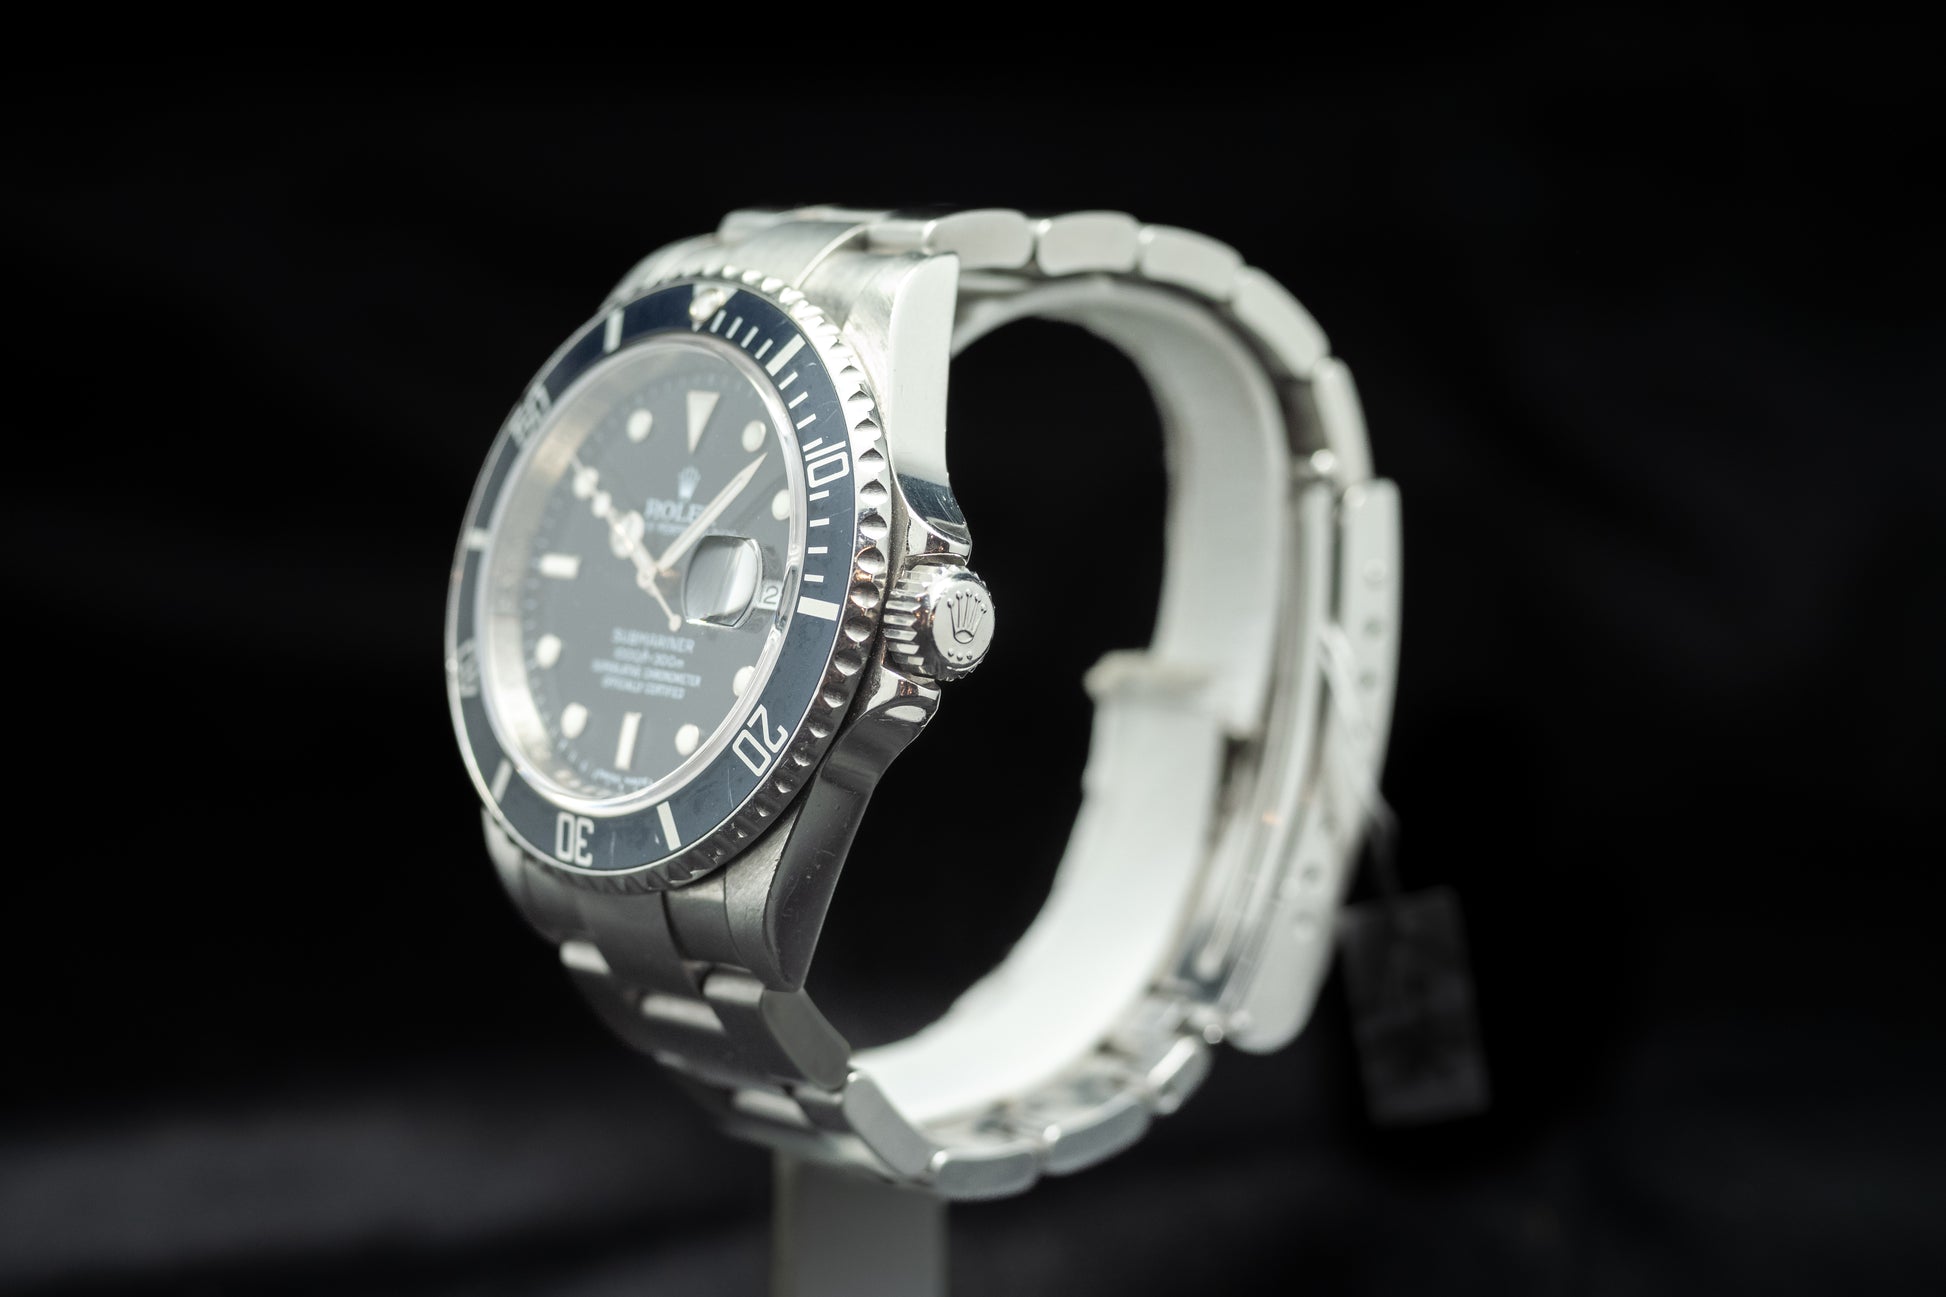 Rolex Submariner 16610 - L'Atelier du Temps